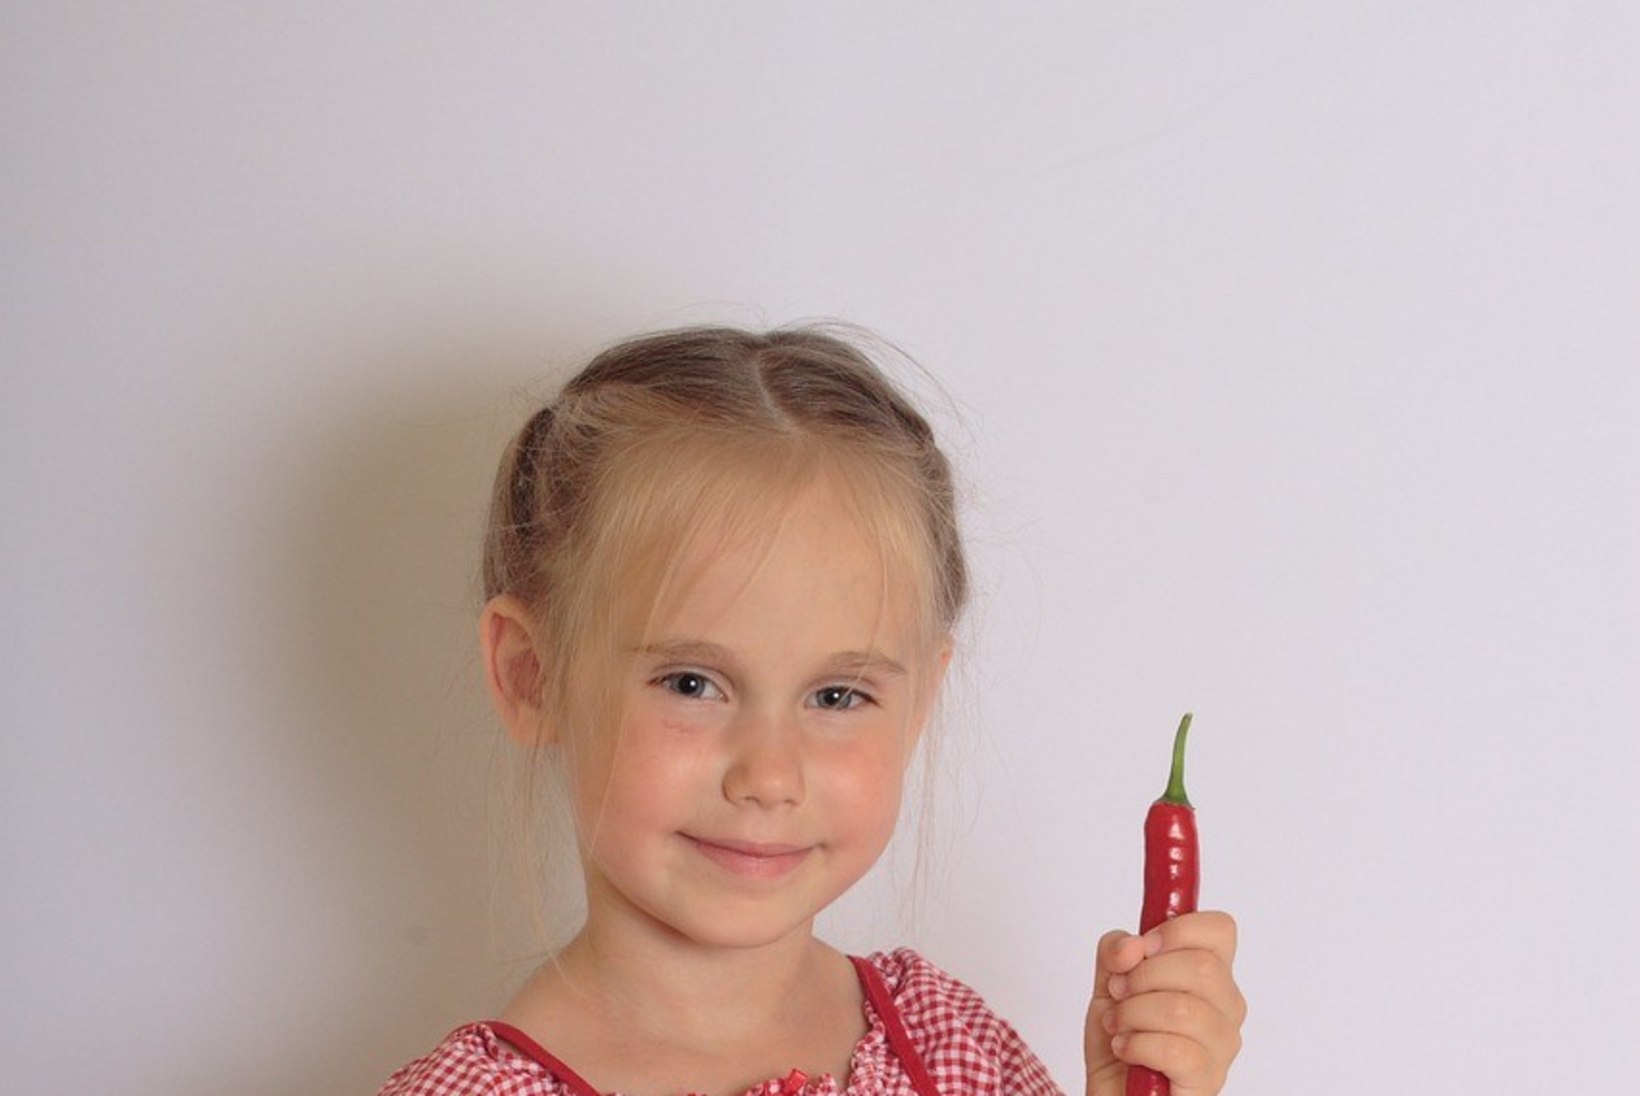 6 nupukat nõksu, mille abil laps hooajalisi köögivilju sööma meelitada